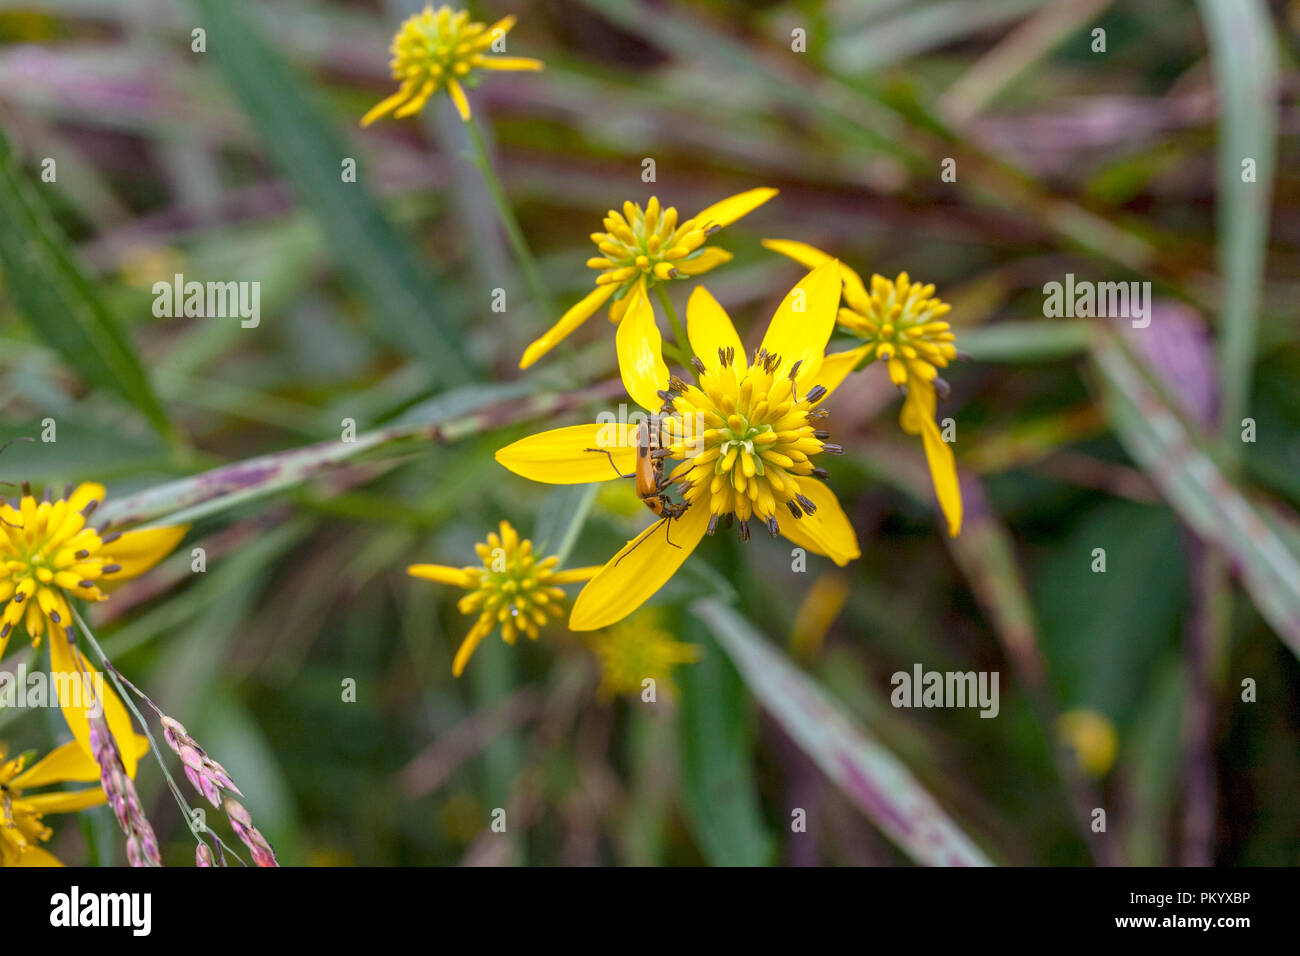 Nahaufnahme einer goldrute Soldat Käfer auf Gelb ironweed Blume, Tennessee, in der Nähe von Knoxville. Stockfoto